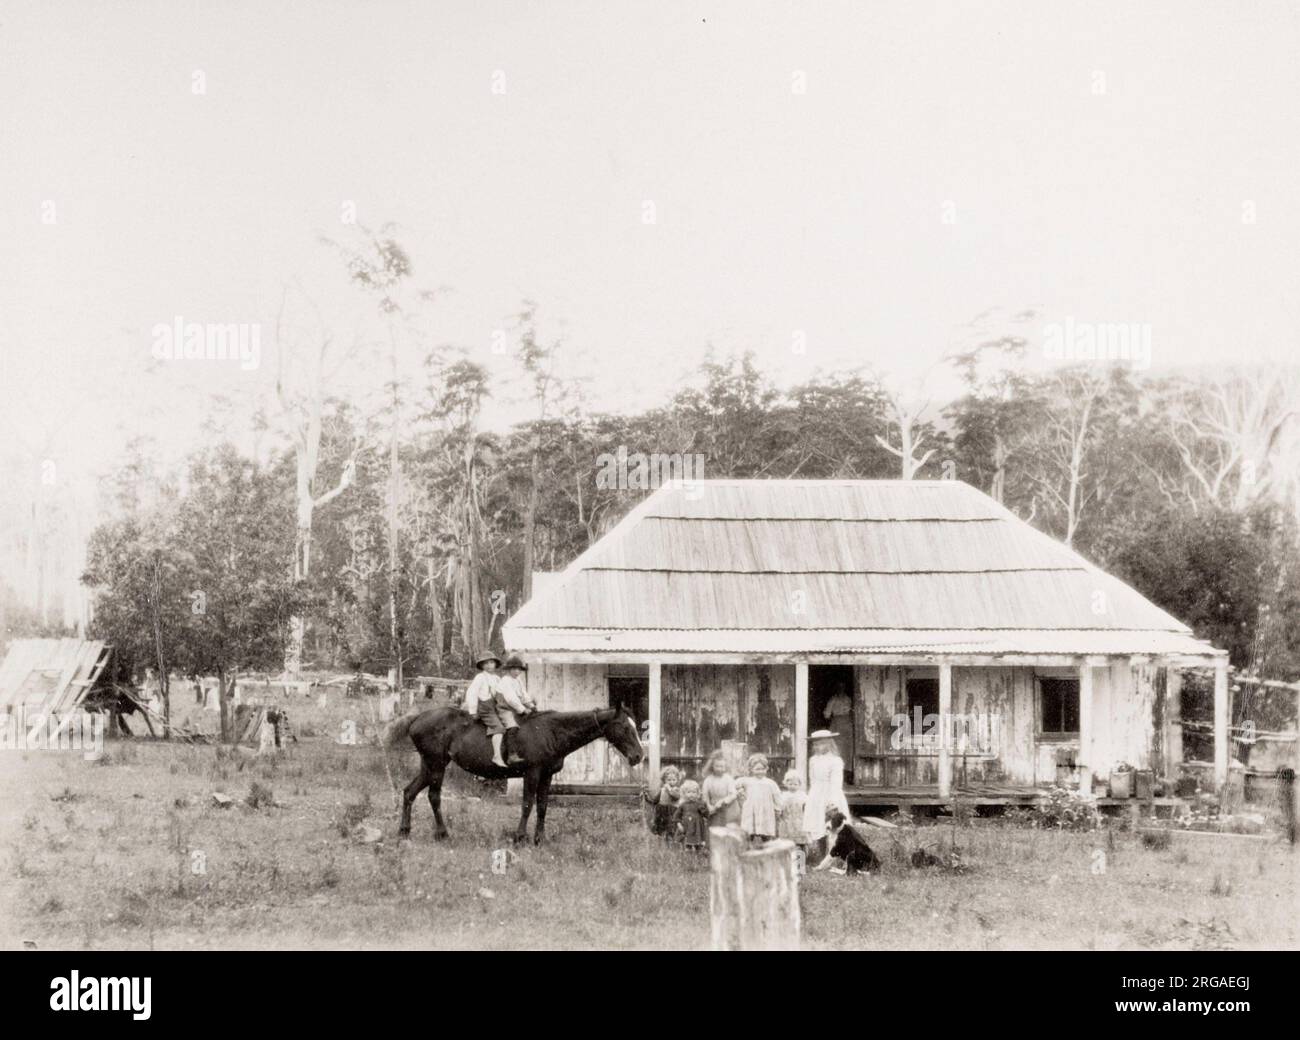 Photographie vintage du XIXe siècle : famille agricole à l'extérieur de leur maison, enfants et cheval, Coolangatta. Coolangatta est une région historique d'Australie, sur la rive nord de la rivière Shoalhaven, sur la côte sud de la Nouvelle-Galles du Sud. Banque D'Images